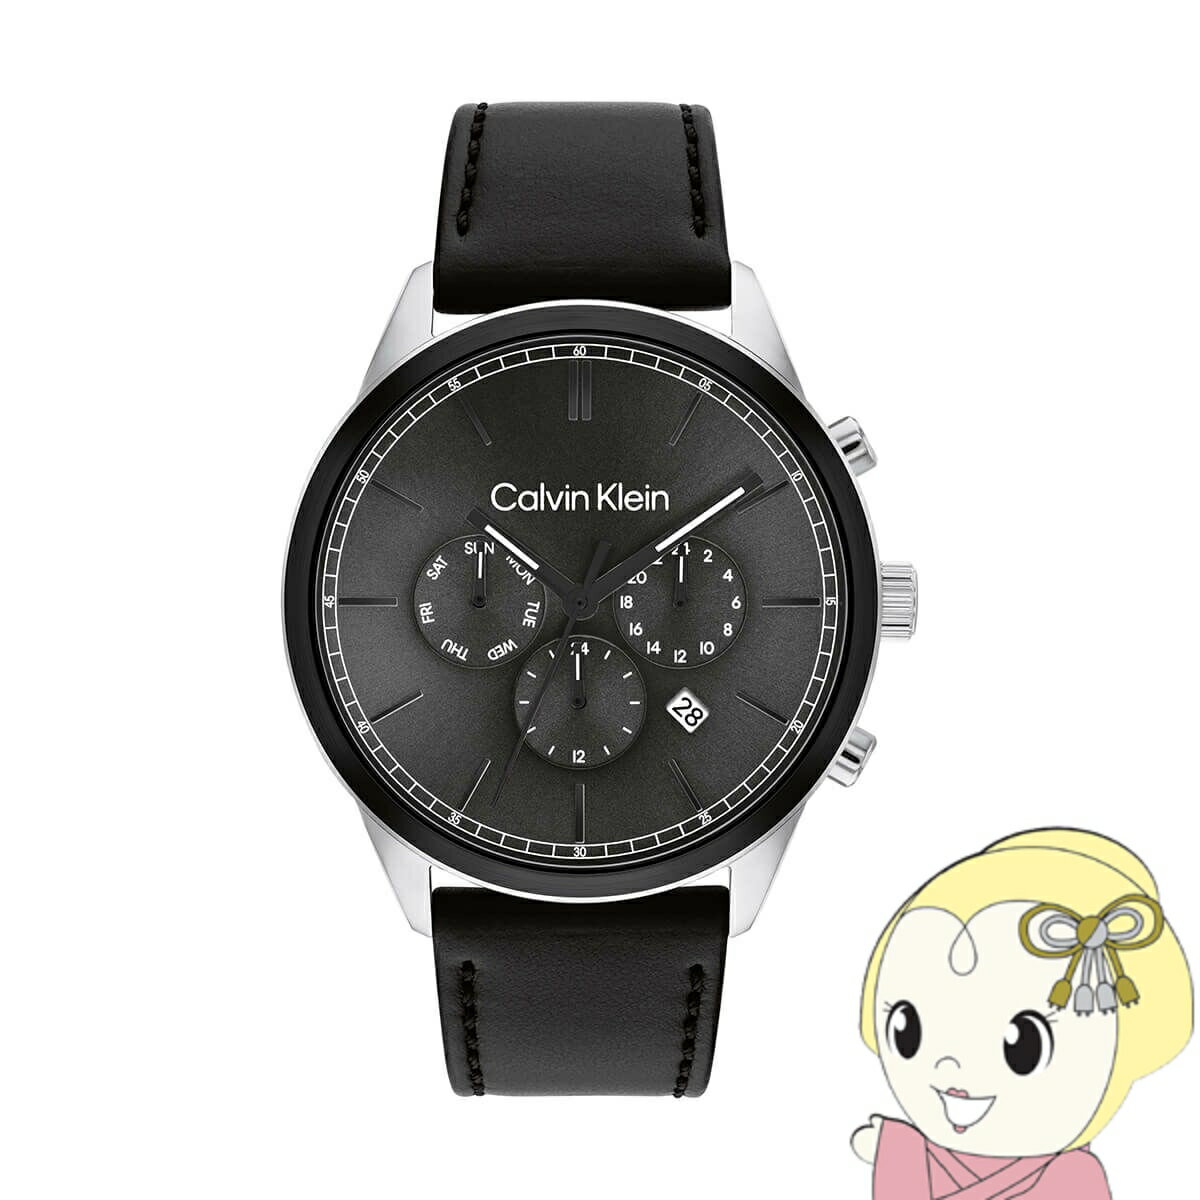 カルバンクライン Calvin Klein 25200379 腕時計 インフィニット ブラックダイヤル レザーベルト メンズ【KK9N0D18P】